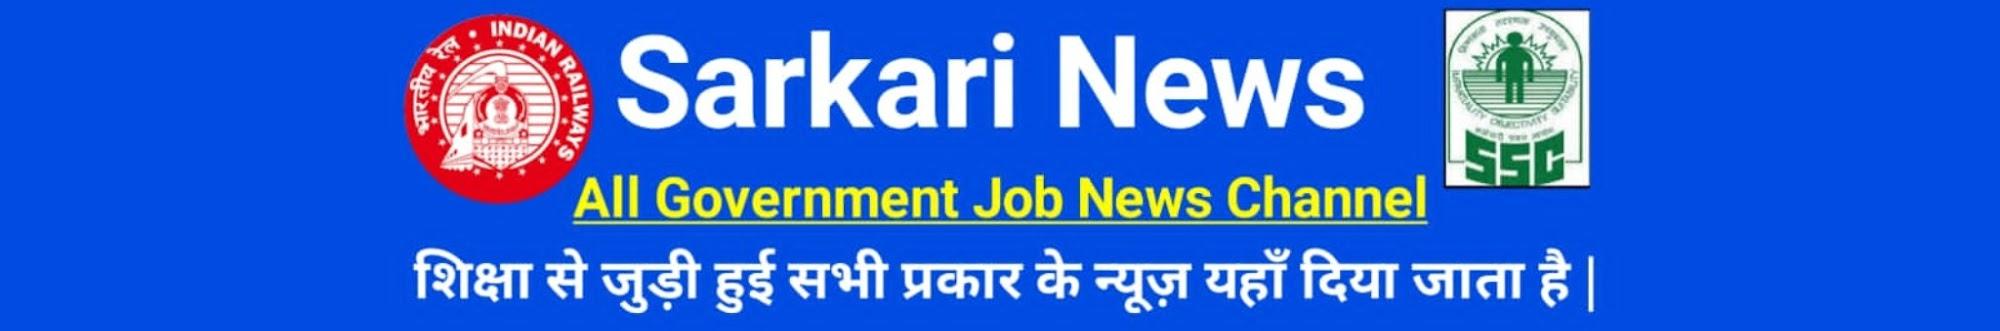 Sarkari News